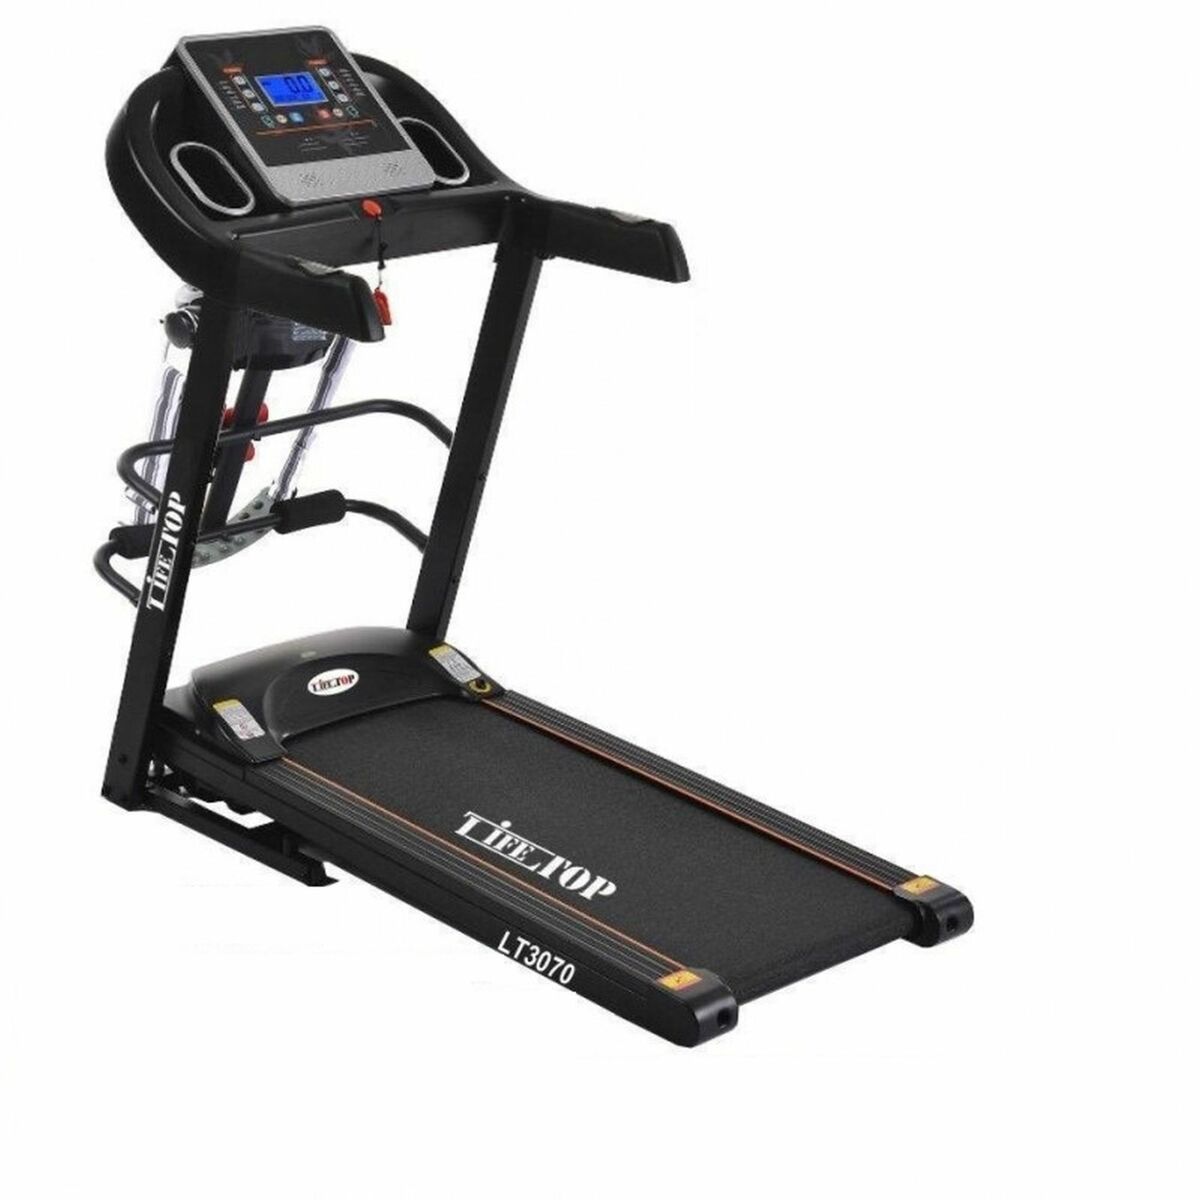 Sports Treadmill Lifetop LT3070 1.5HP